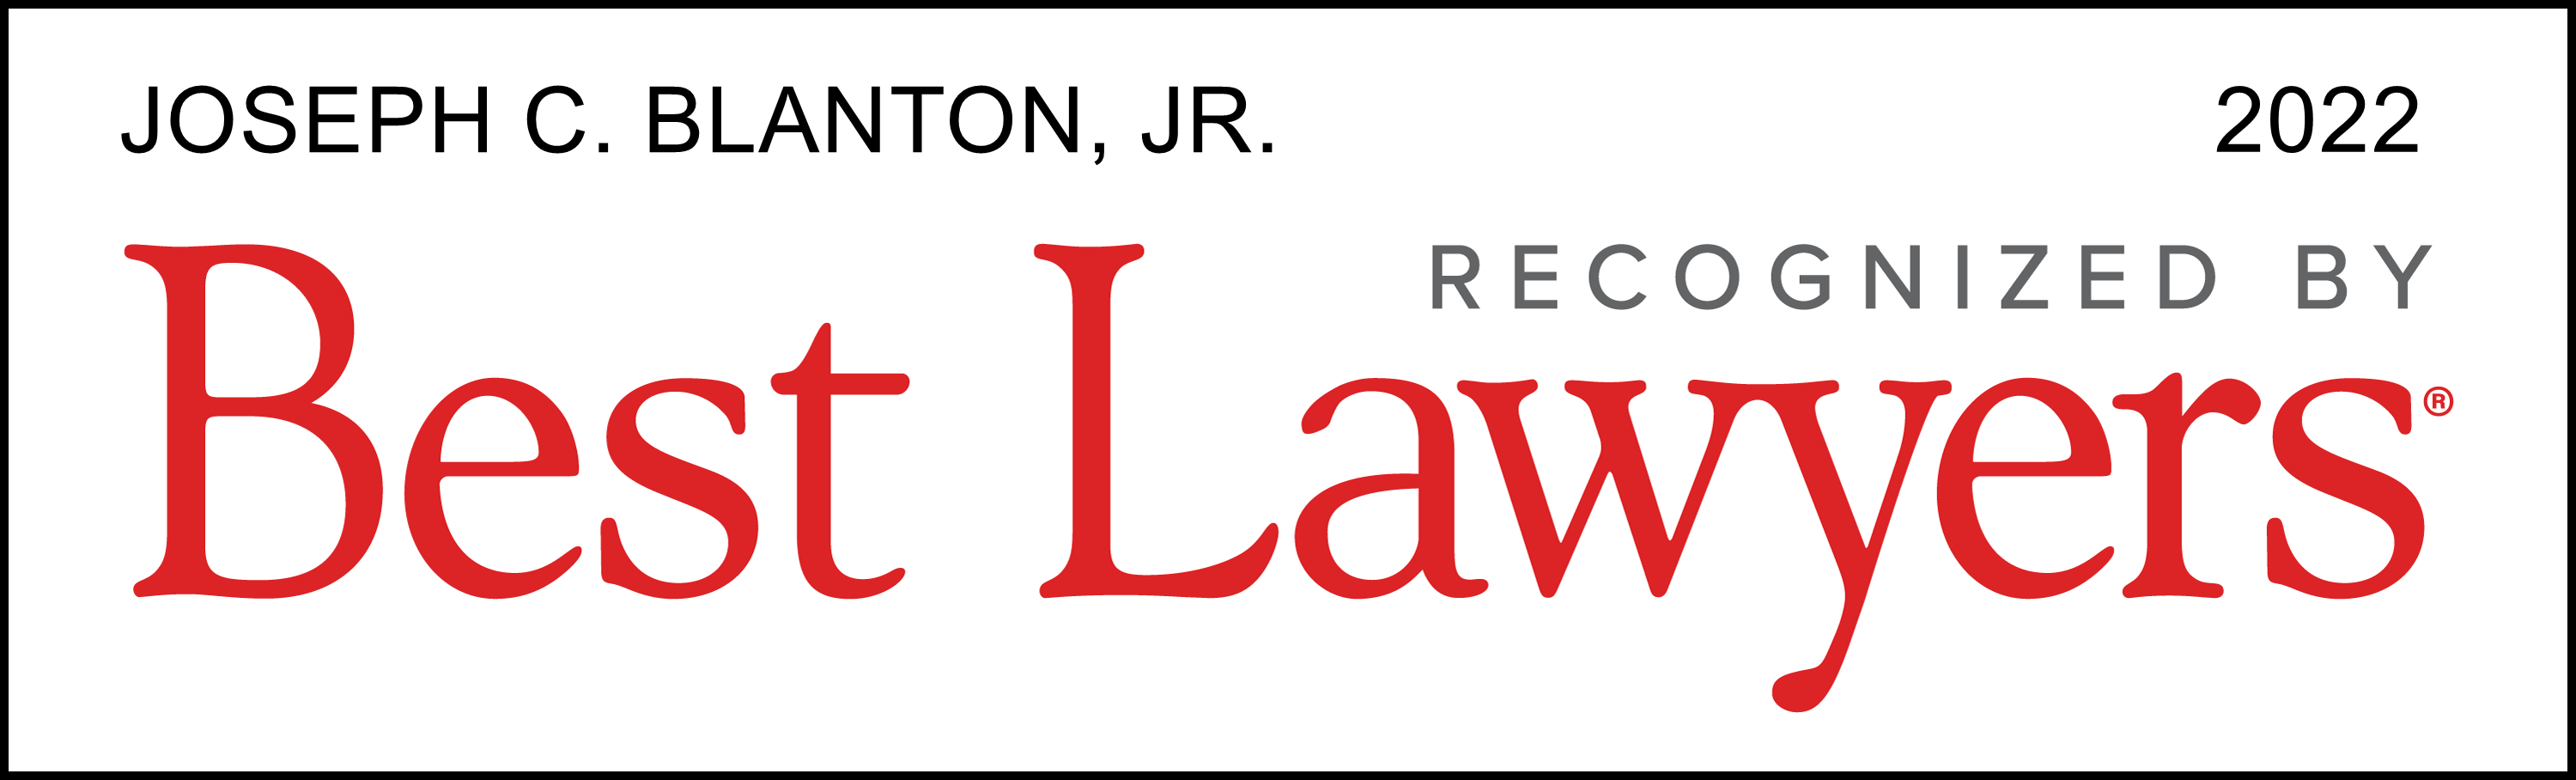 Best Lawyers 2022 Joseph C. Blanton Jr.